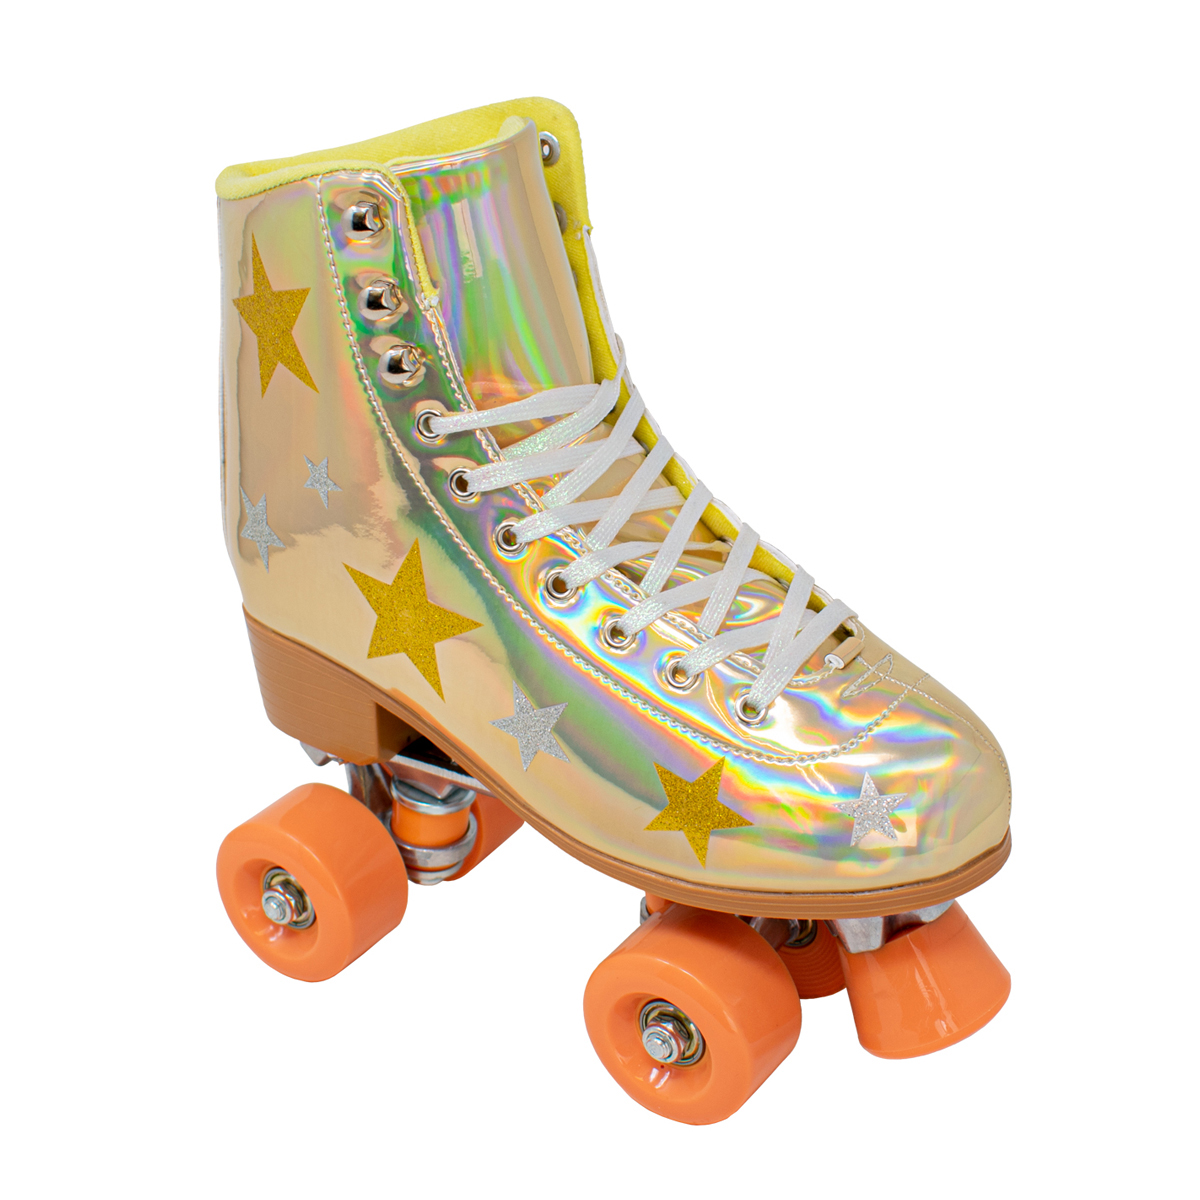 Womens Cosmic Skates Gold Star Roller Skates